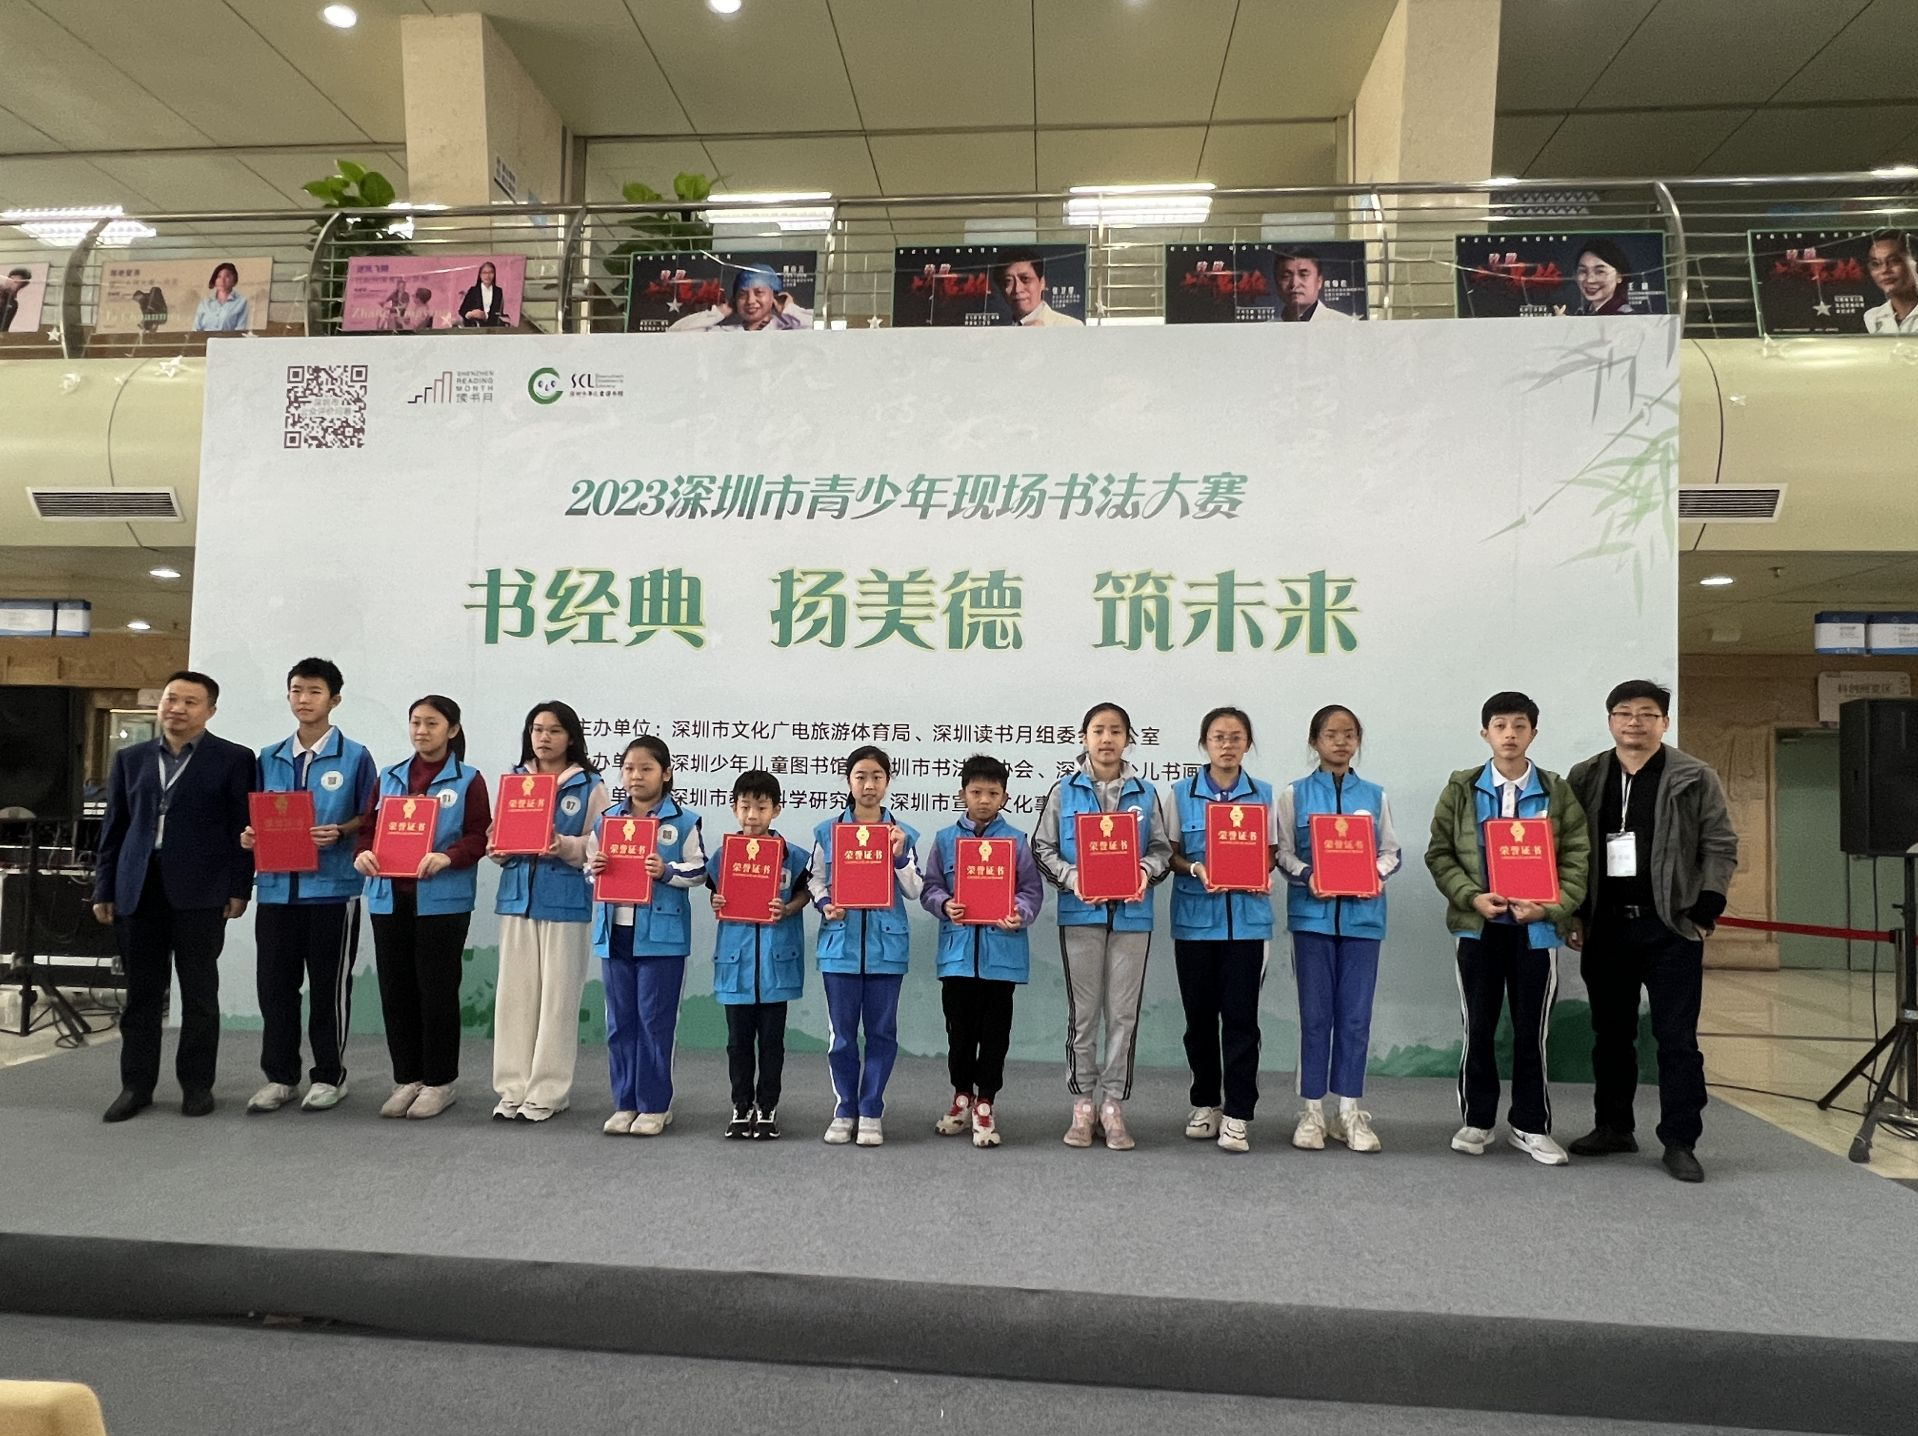 书经典 扬美德 筑未来 2023深圳市青少年现场书法大赛在少图举行